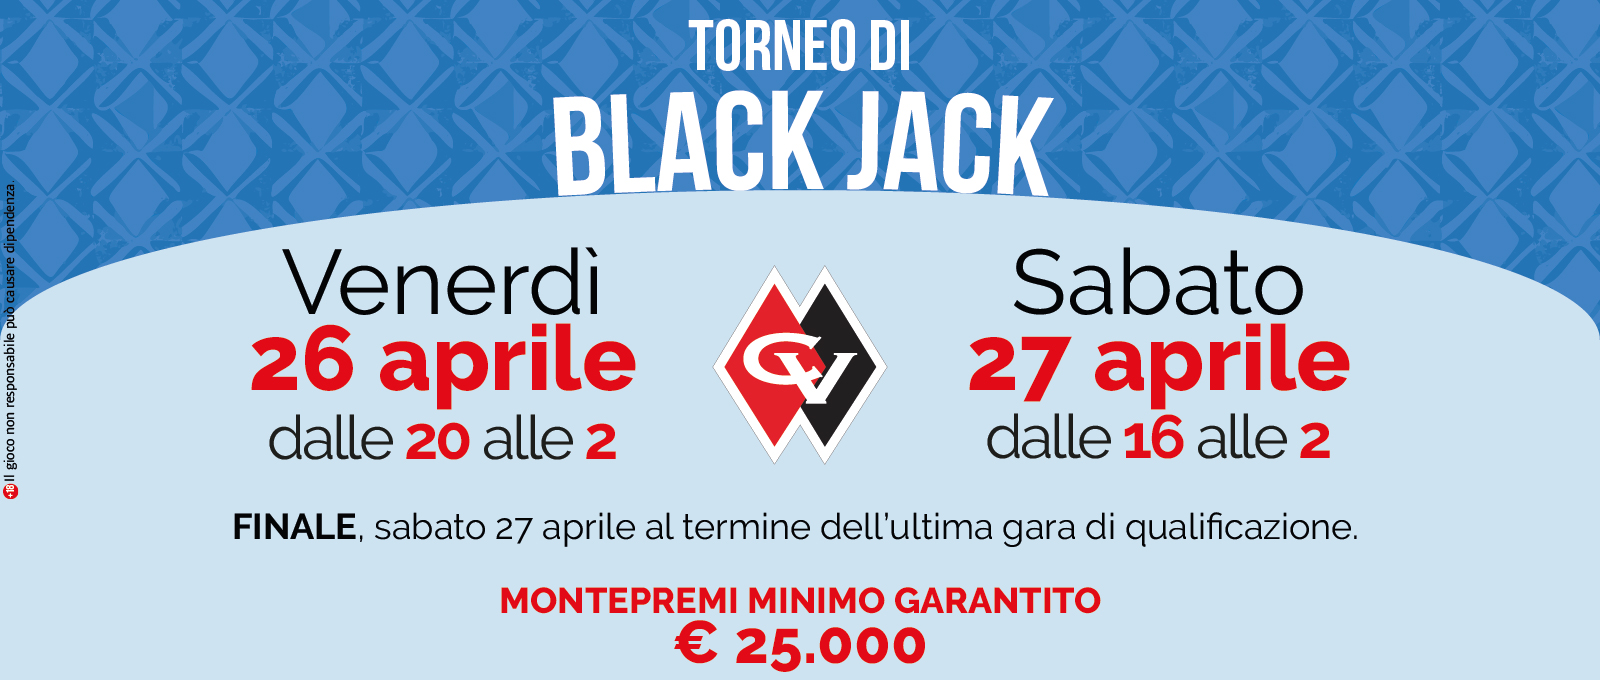 Torneo di Black Jack